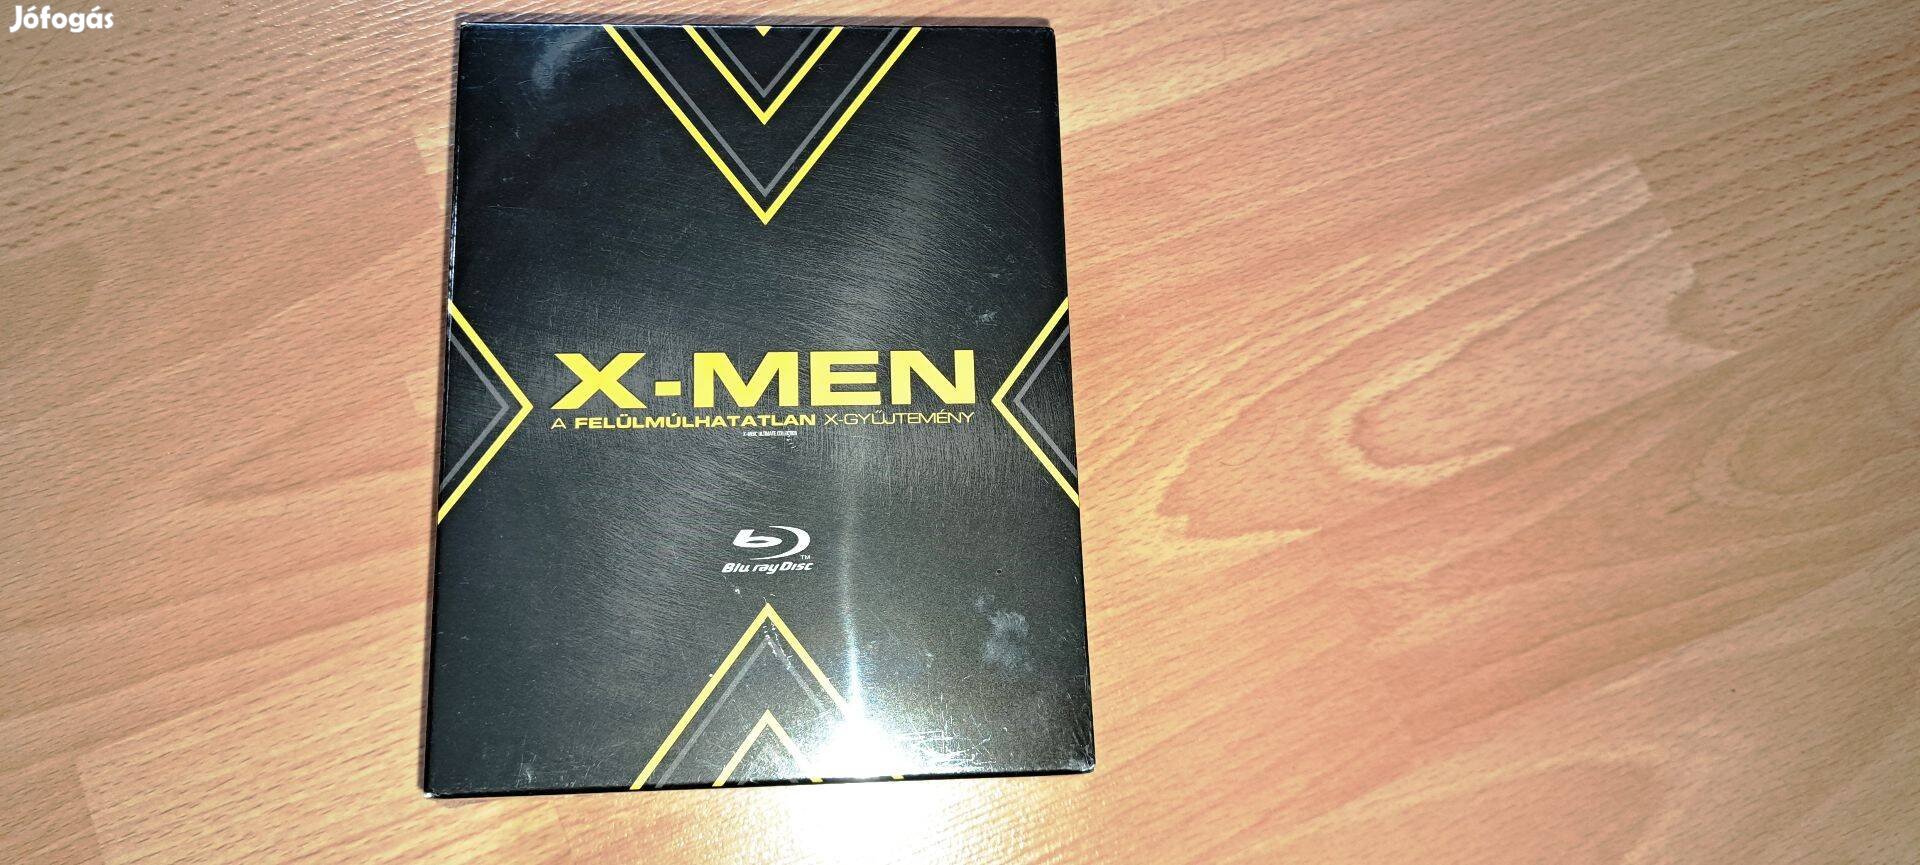 X-MEN : A Felülmúlhatatlan X-Gyűjtemény ( 5 Bluray ) Bontatlan